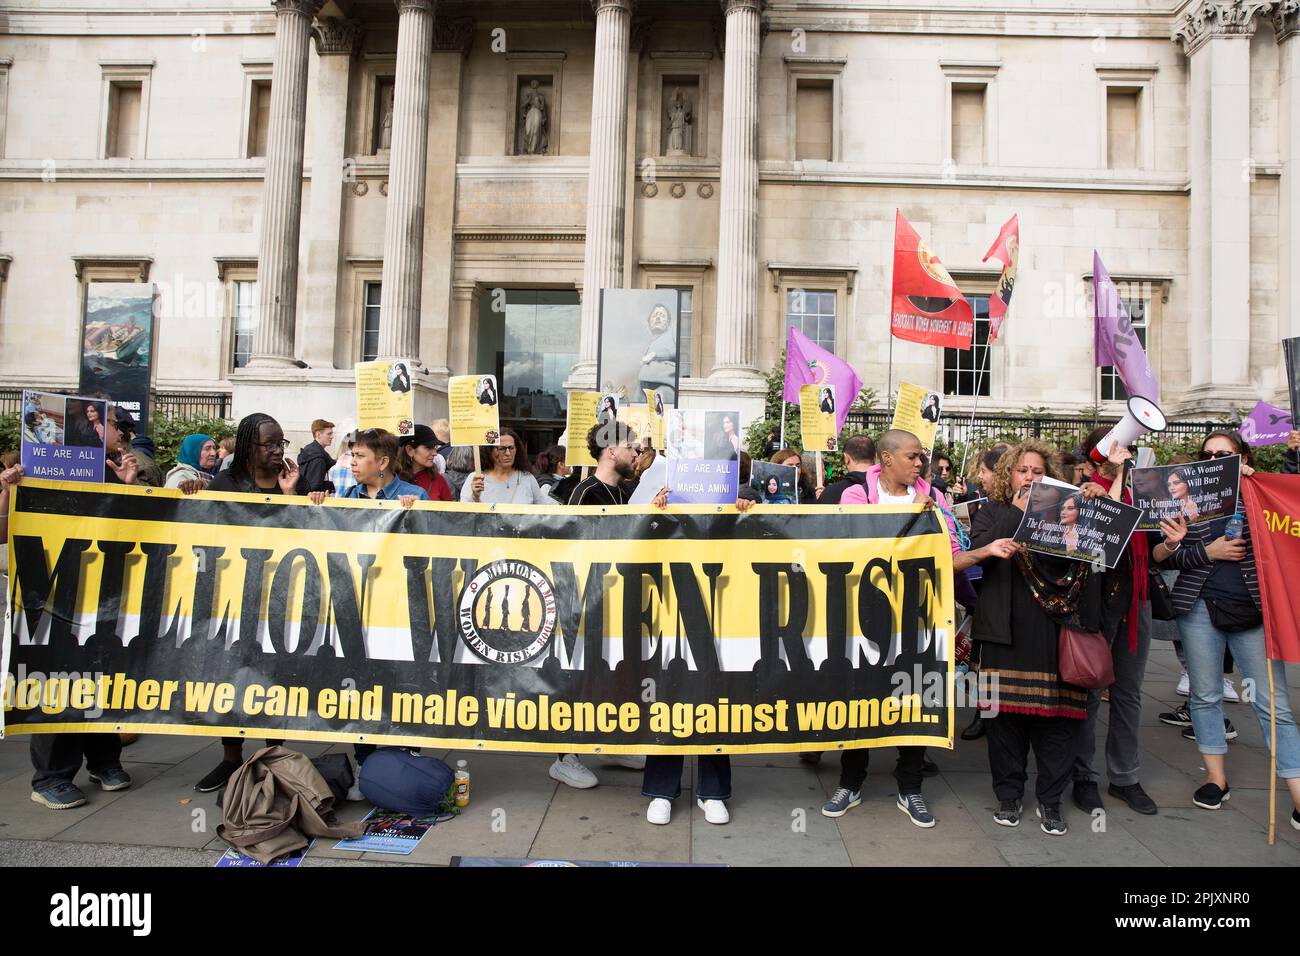 Los participantes sostienen una pancarta pidiendo el fin de la violencia masculina contra las mujeres en Londres, mientras la gente se reúne en apoyo de la libertad de las mujeres en Irán. Foto de stock